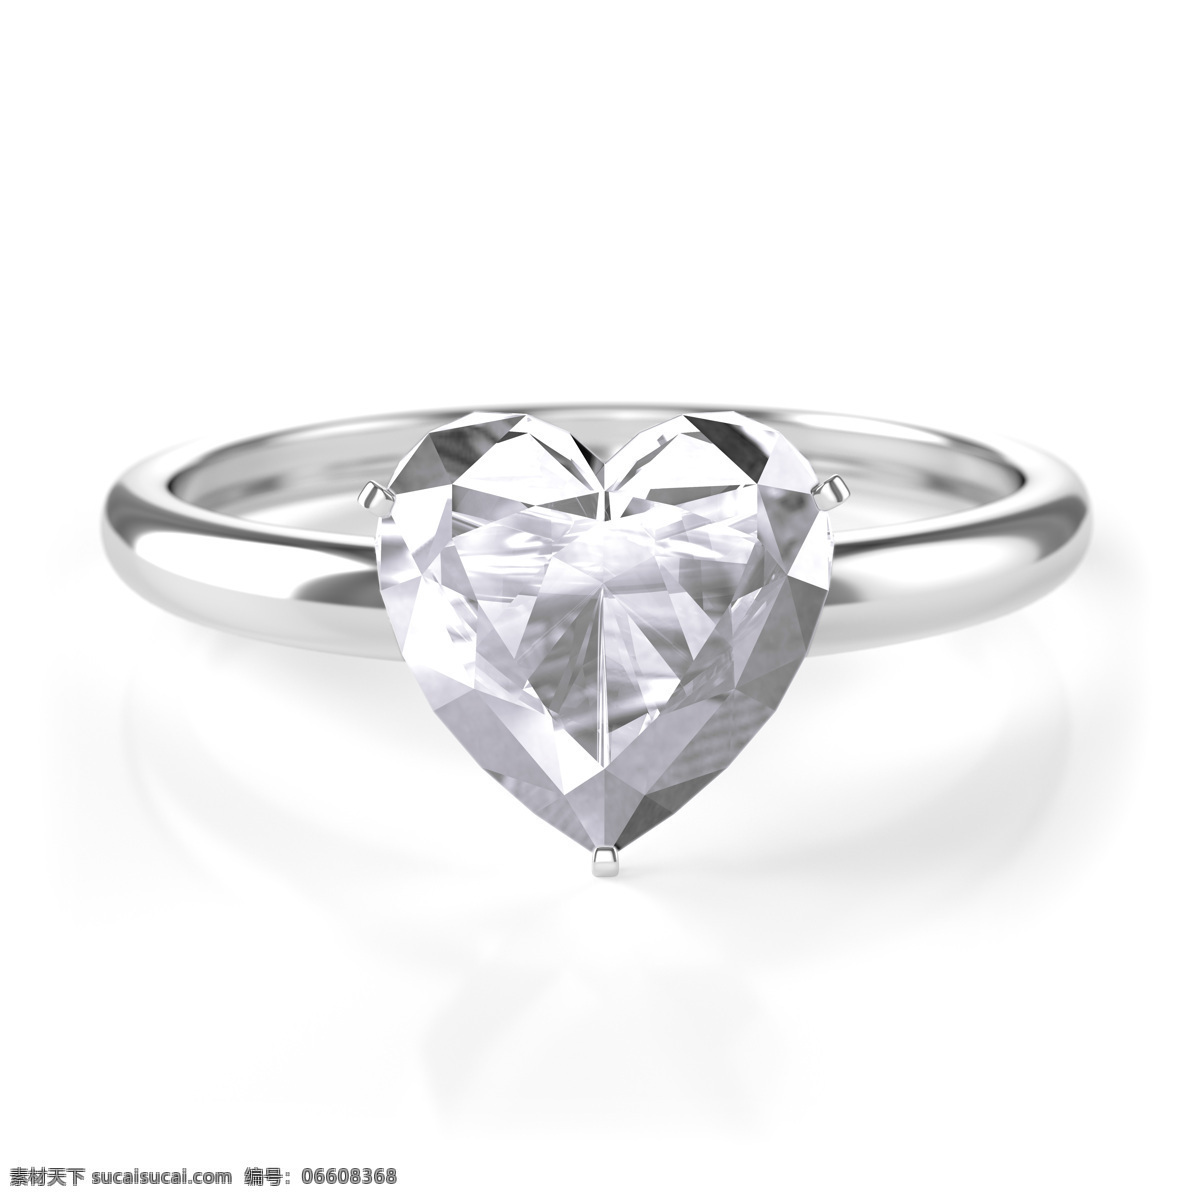 水晶 心形 戒指 钻石戒指 手环 婚戒钻石 戒指钻石 饰品 珠宝服饰 生活百科